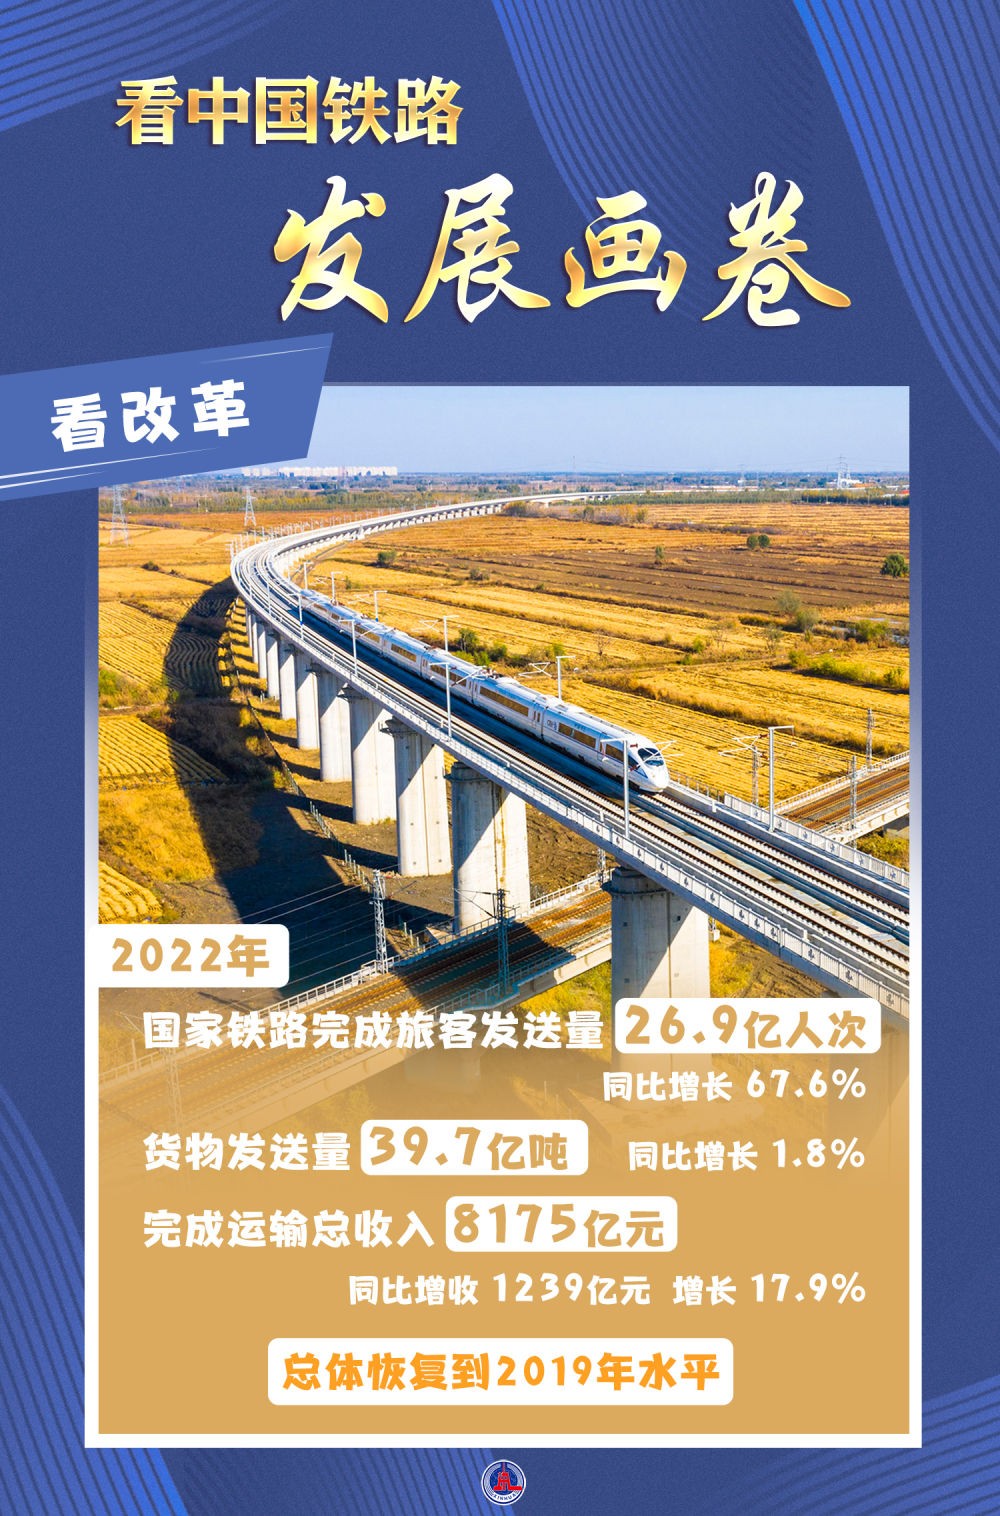 中国经济新亮点点击四大关键词看中国铁路发展画卷